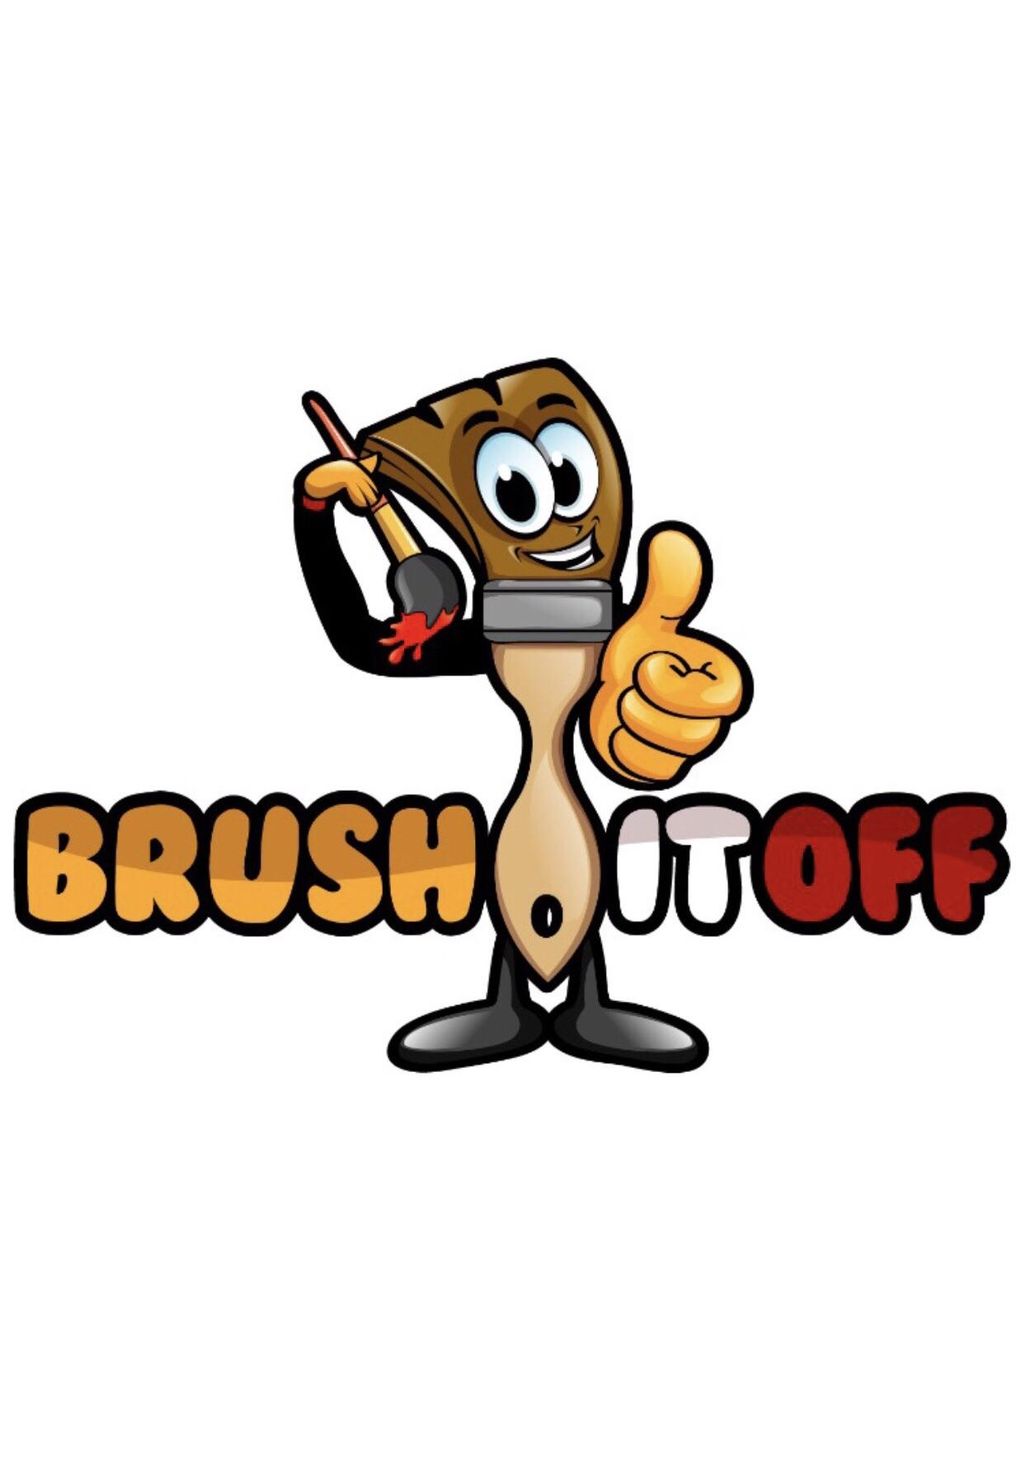 BrushItOff, LLC